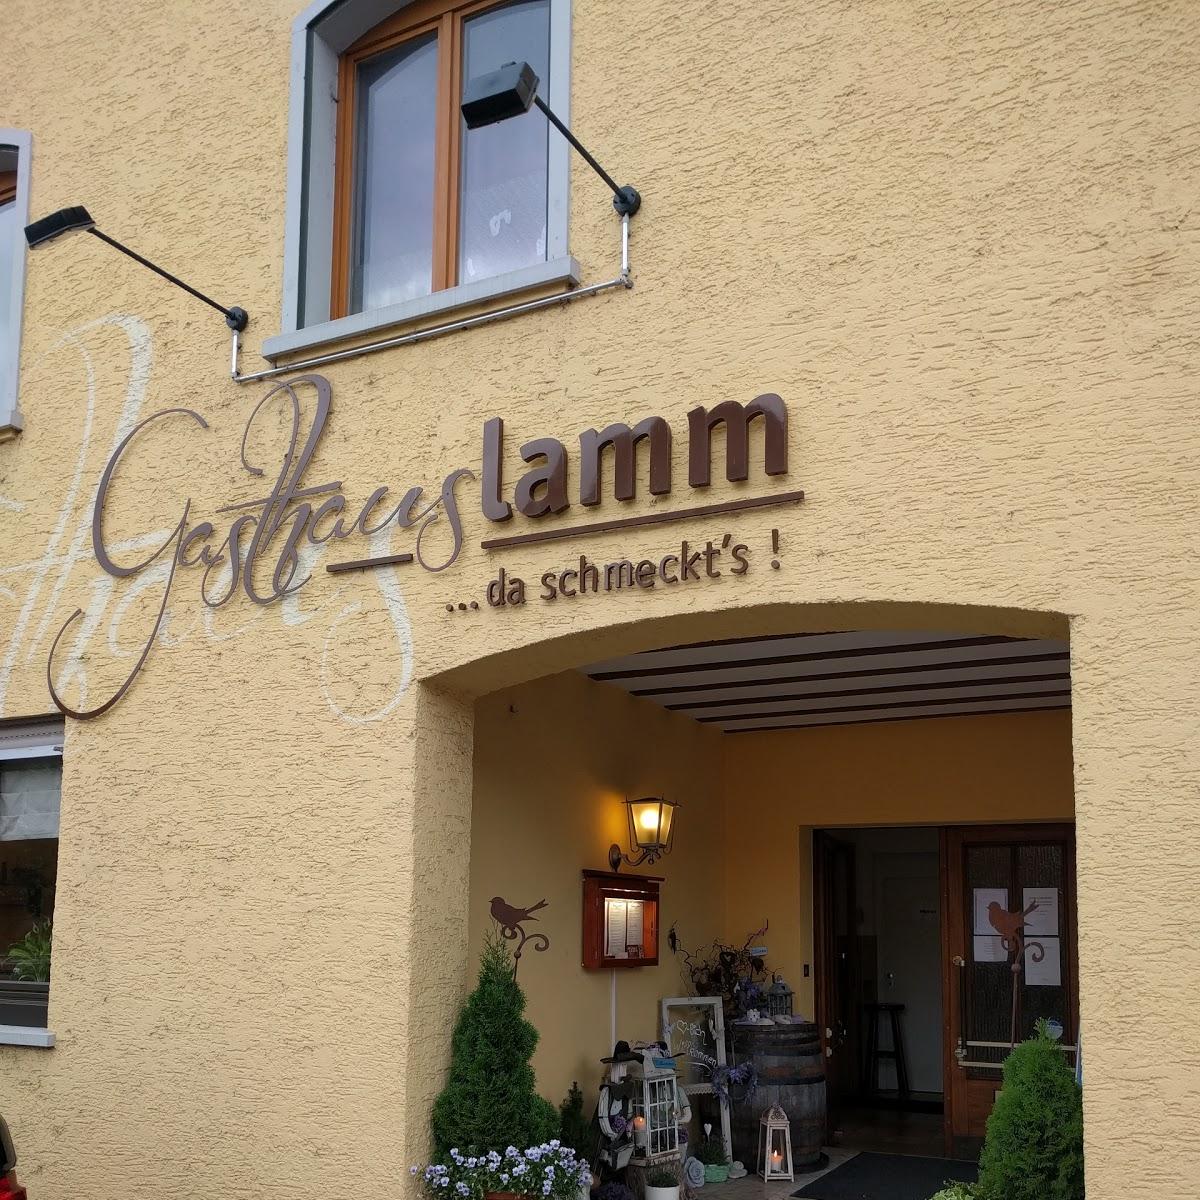 Restaurant "Gasthaus Lamm" in Albbruck